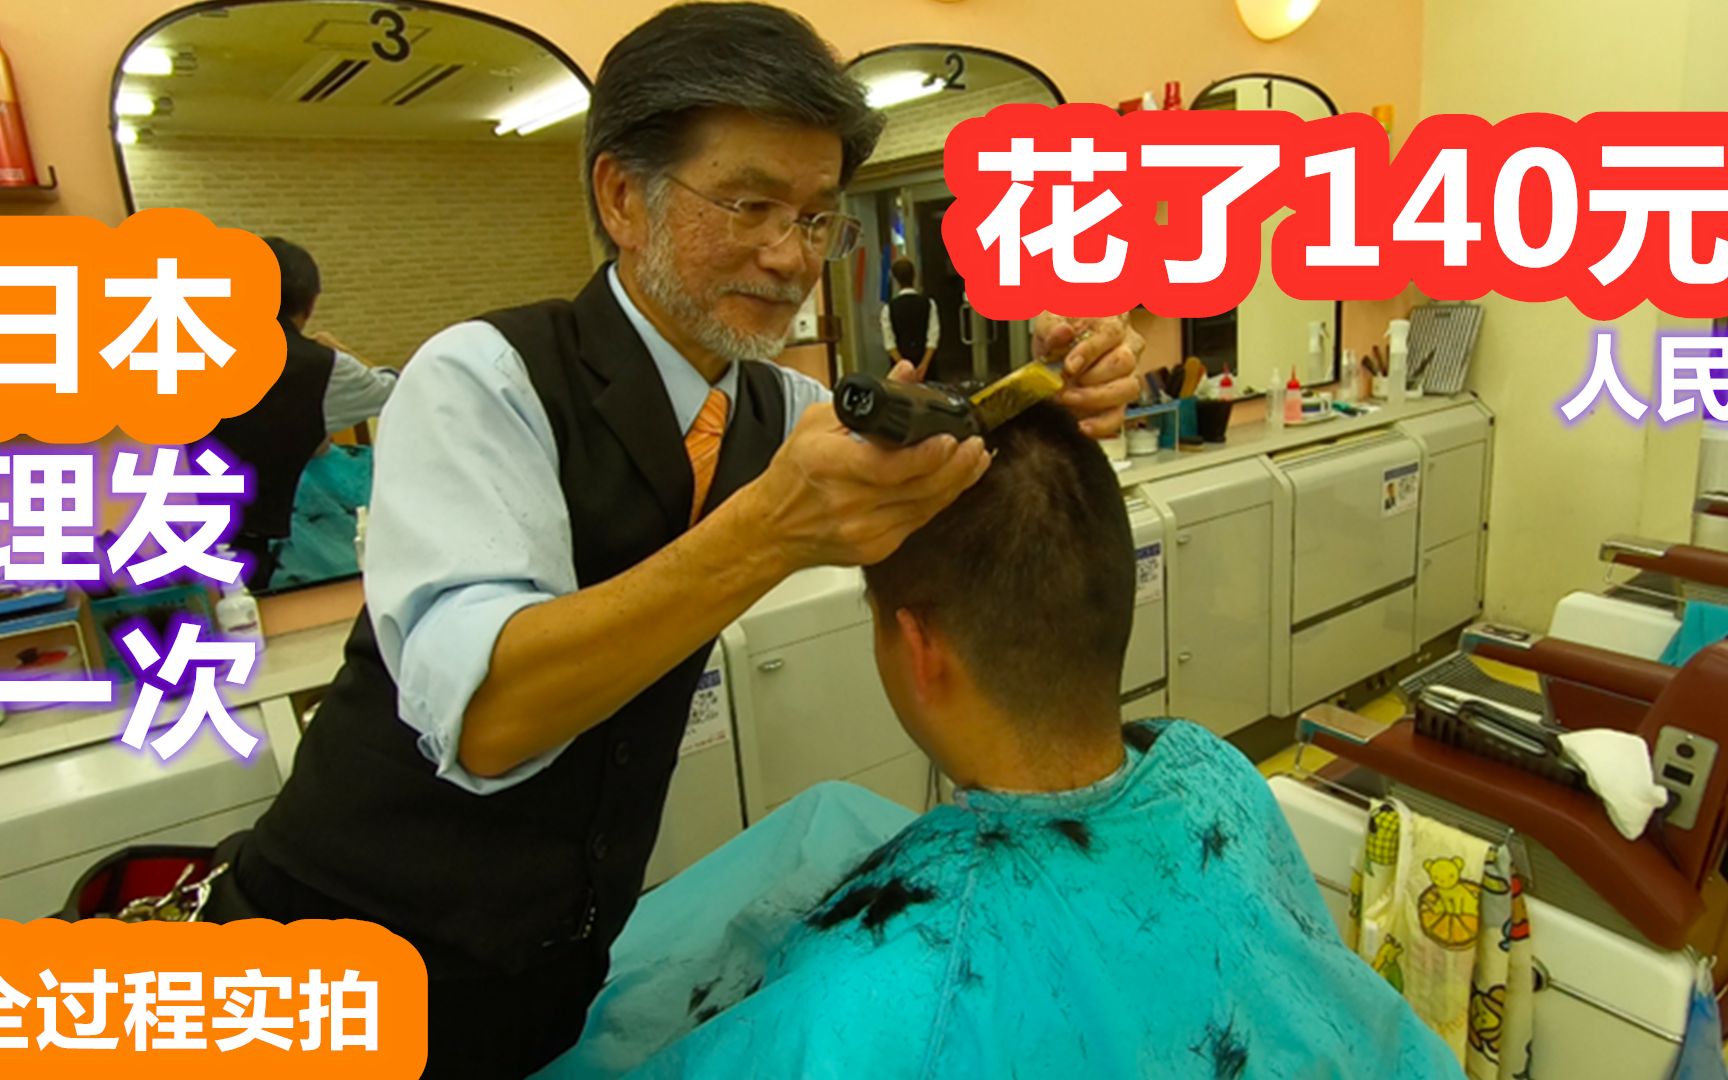 中国男子在日本理发店理发，一次花了140元人民币，全过程曝光